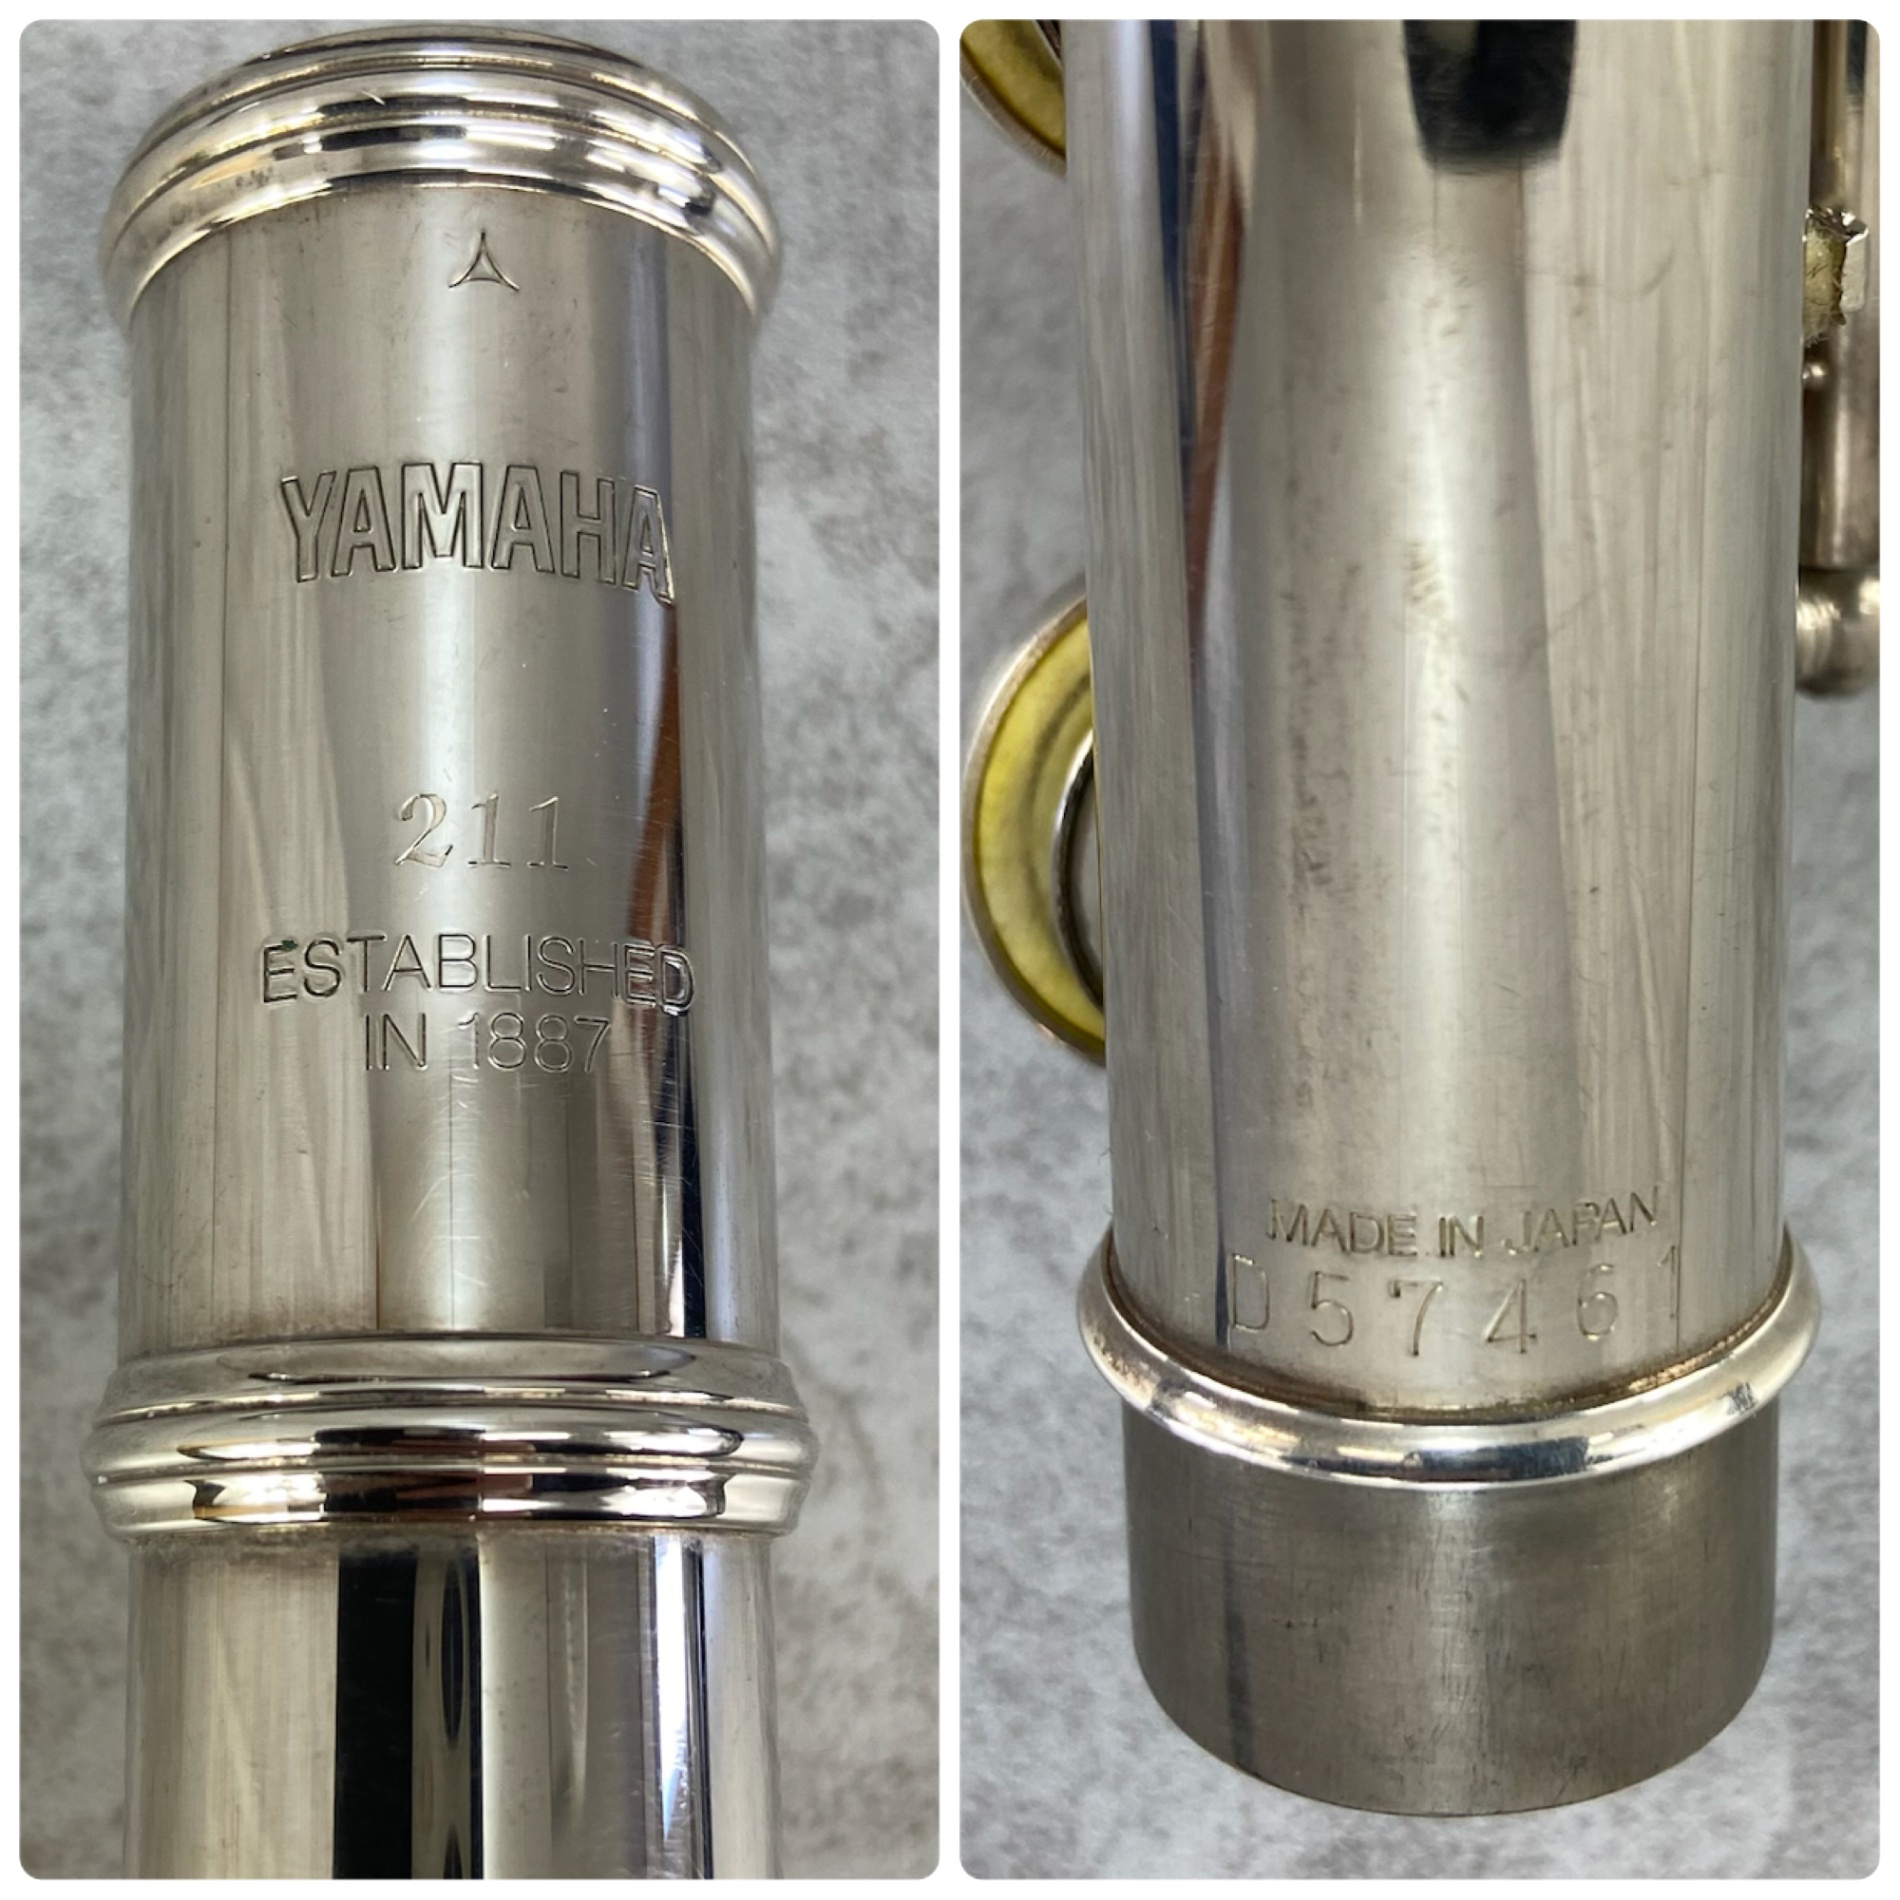 YAMAHA Yamaha флейта Flute YFL211 более поздняя модель E механизм серебряный металлизированный серебряный жесткий чехол начинающий schu-tento студент 